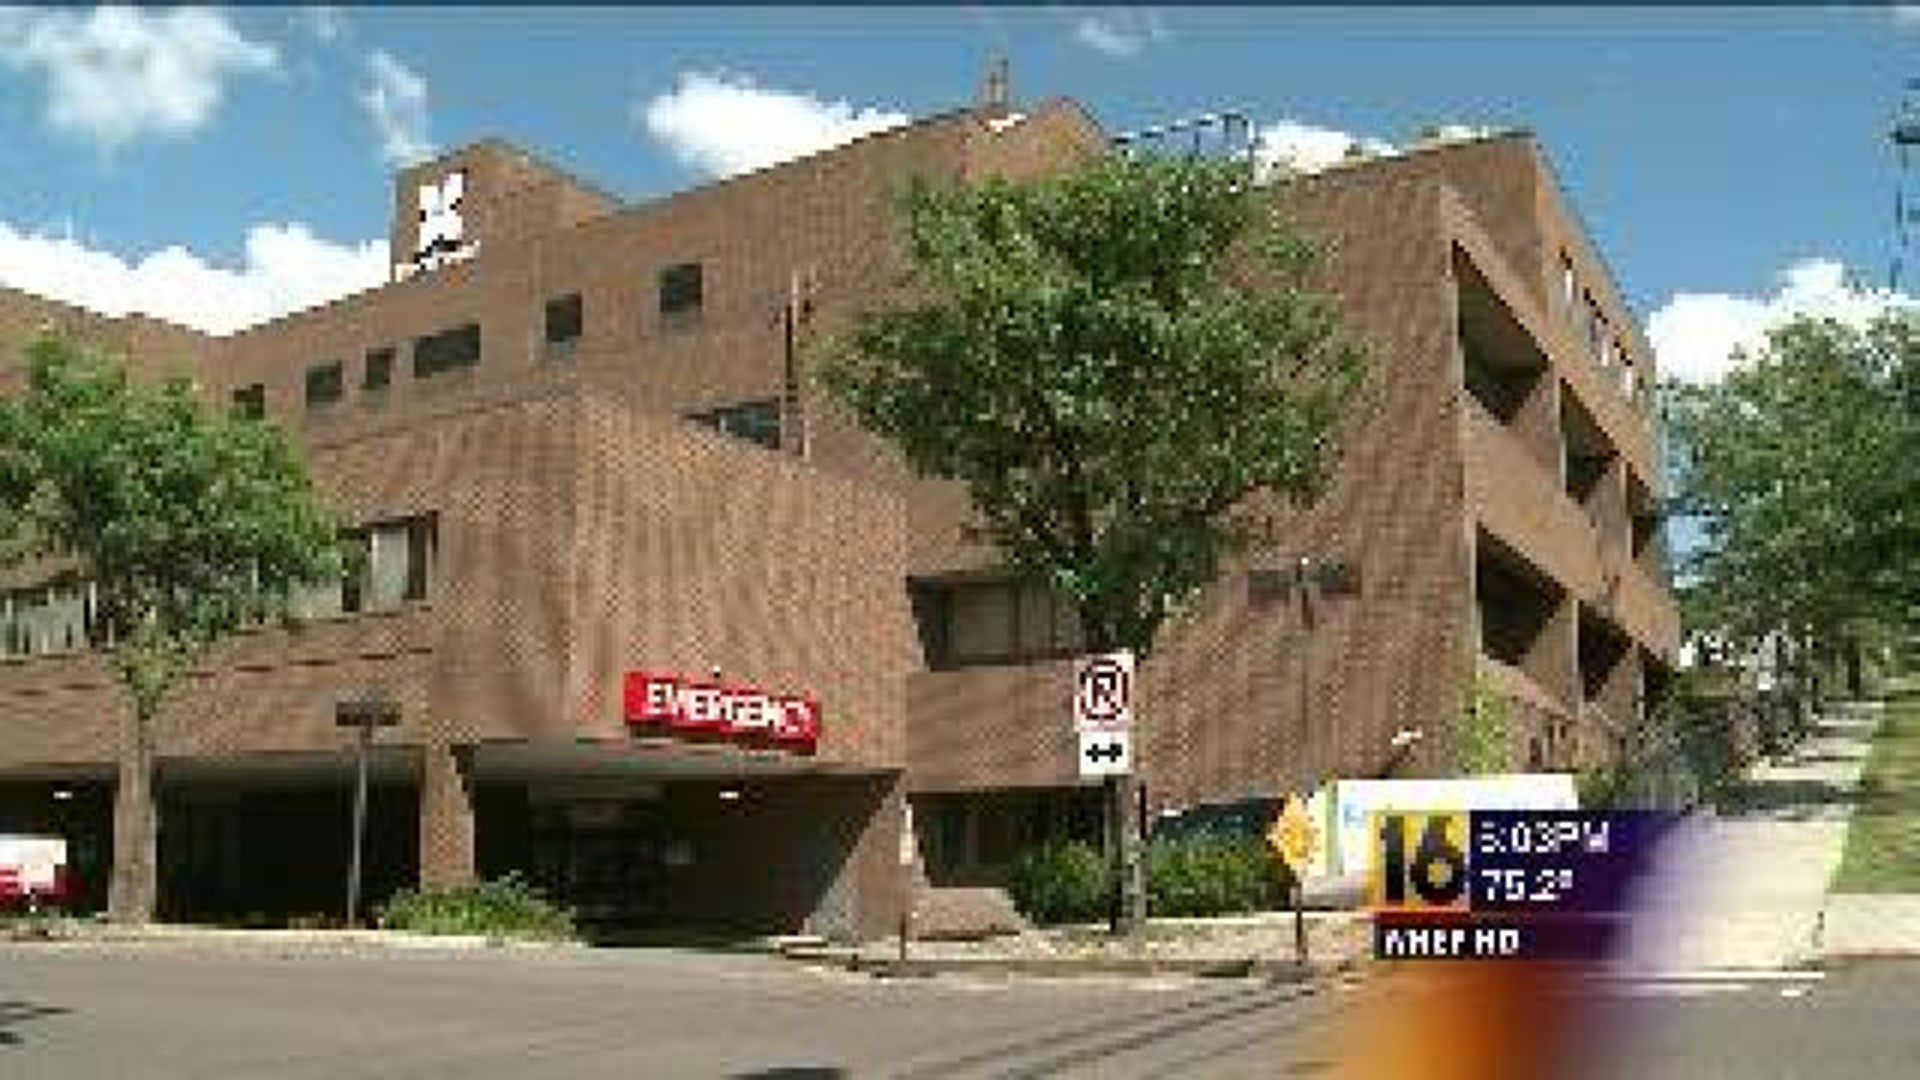 Union: Layoffs at Regional Hospital of Scranton